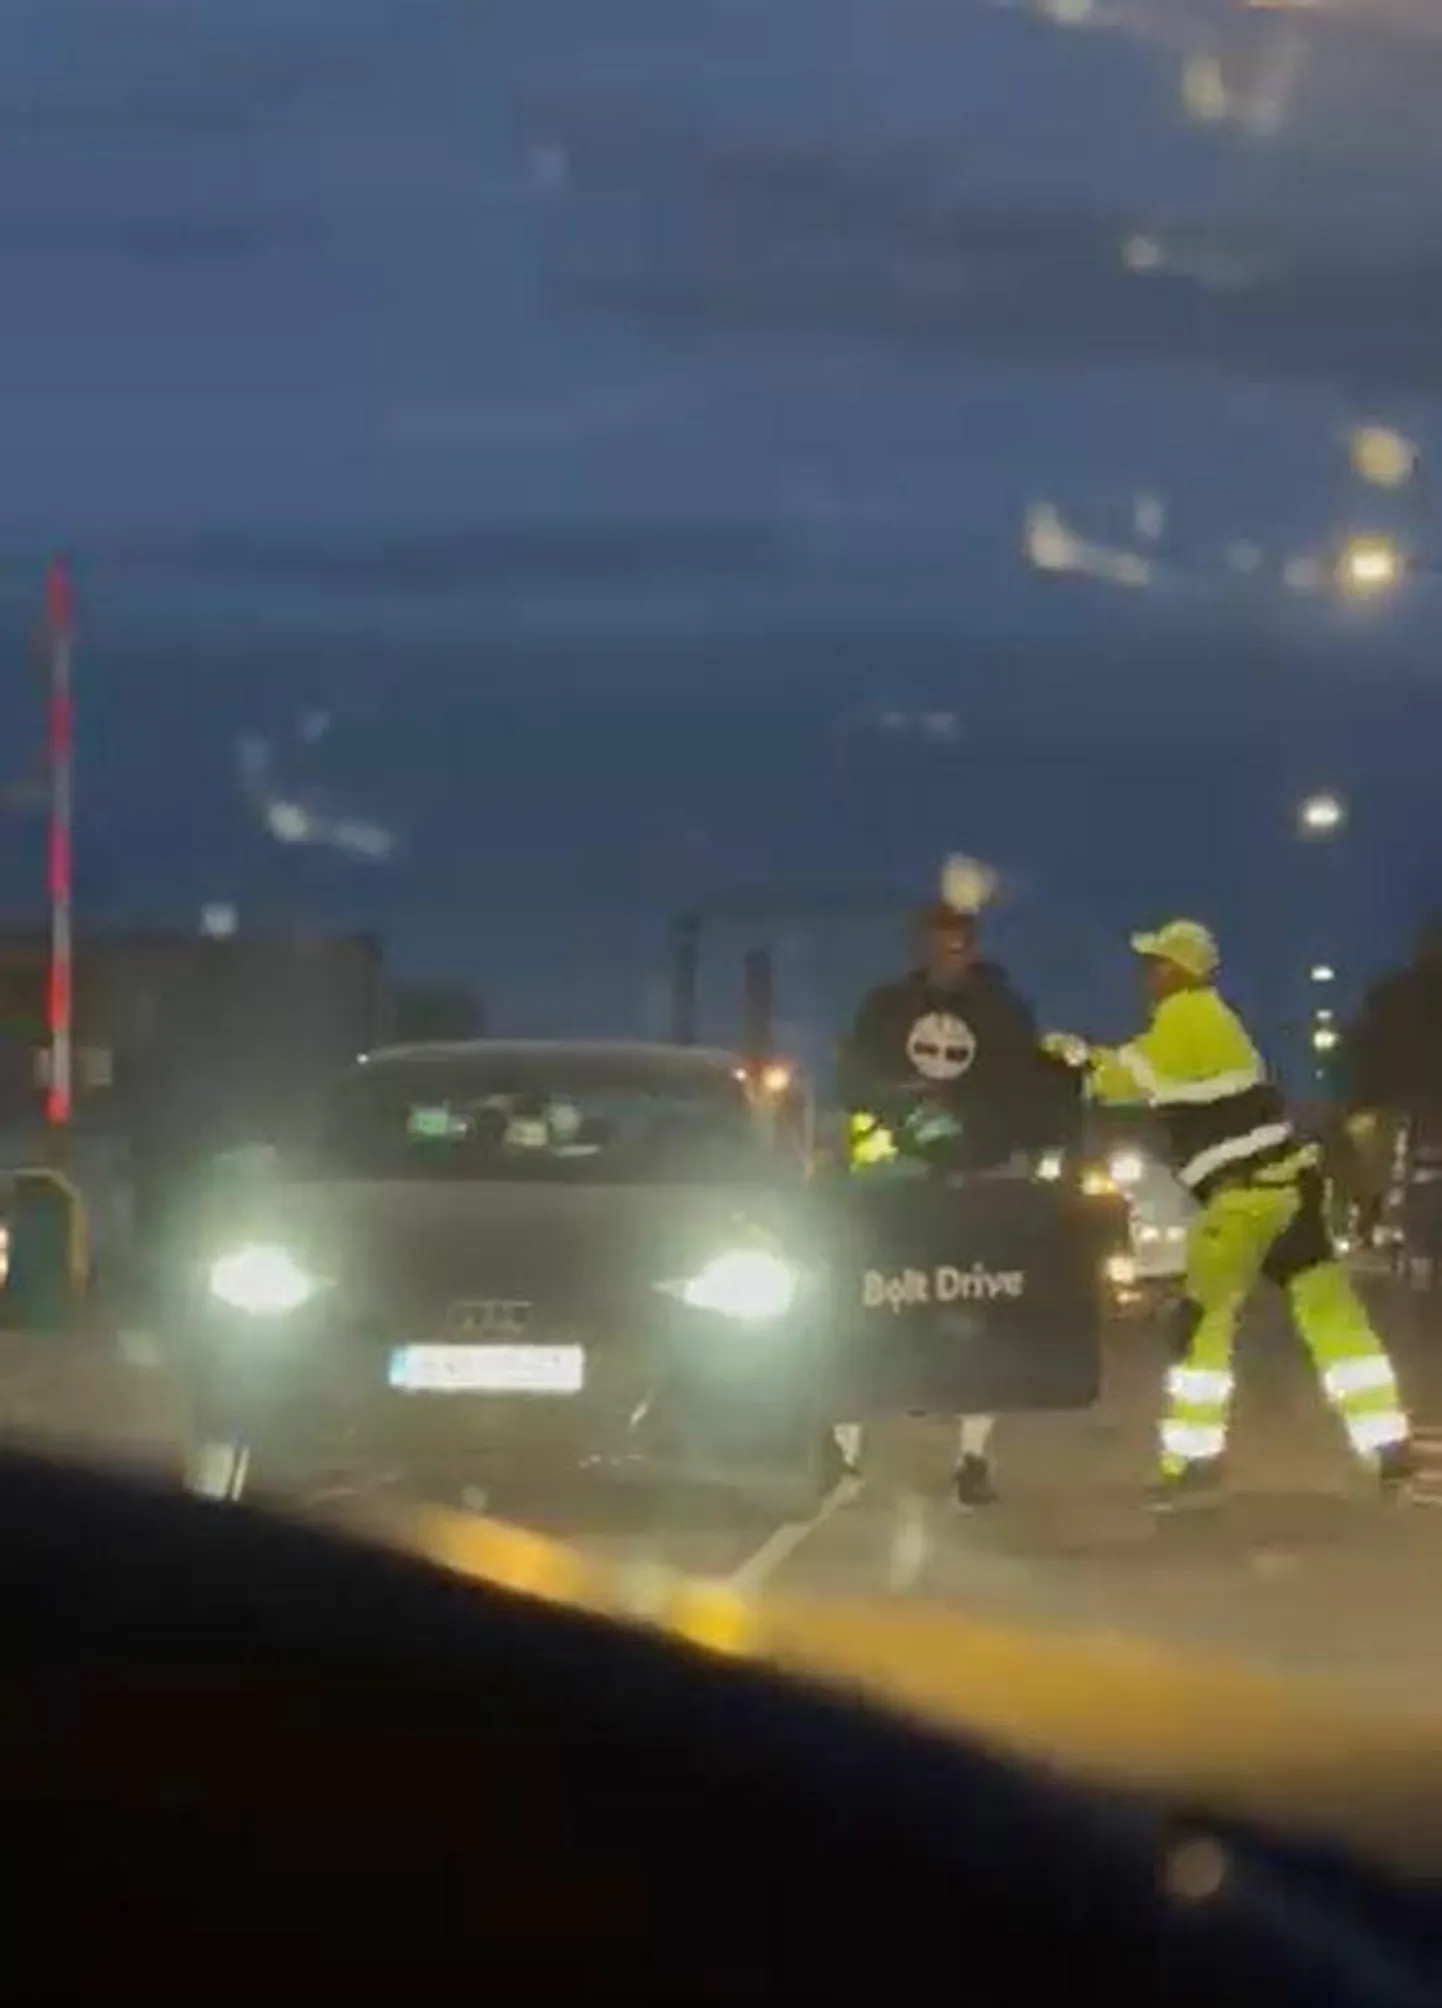 Tartus Aardla tänaval tekkis esmaspäeva õhtul autojuhi ja liikluskorraldaja vahel tüli. Kuvatõmmis videost.